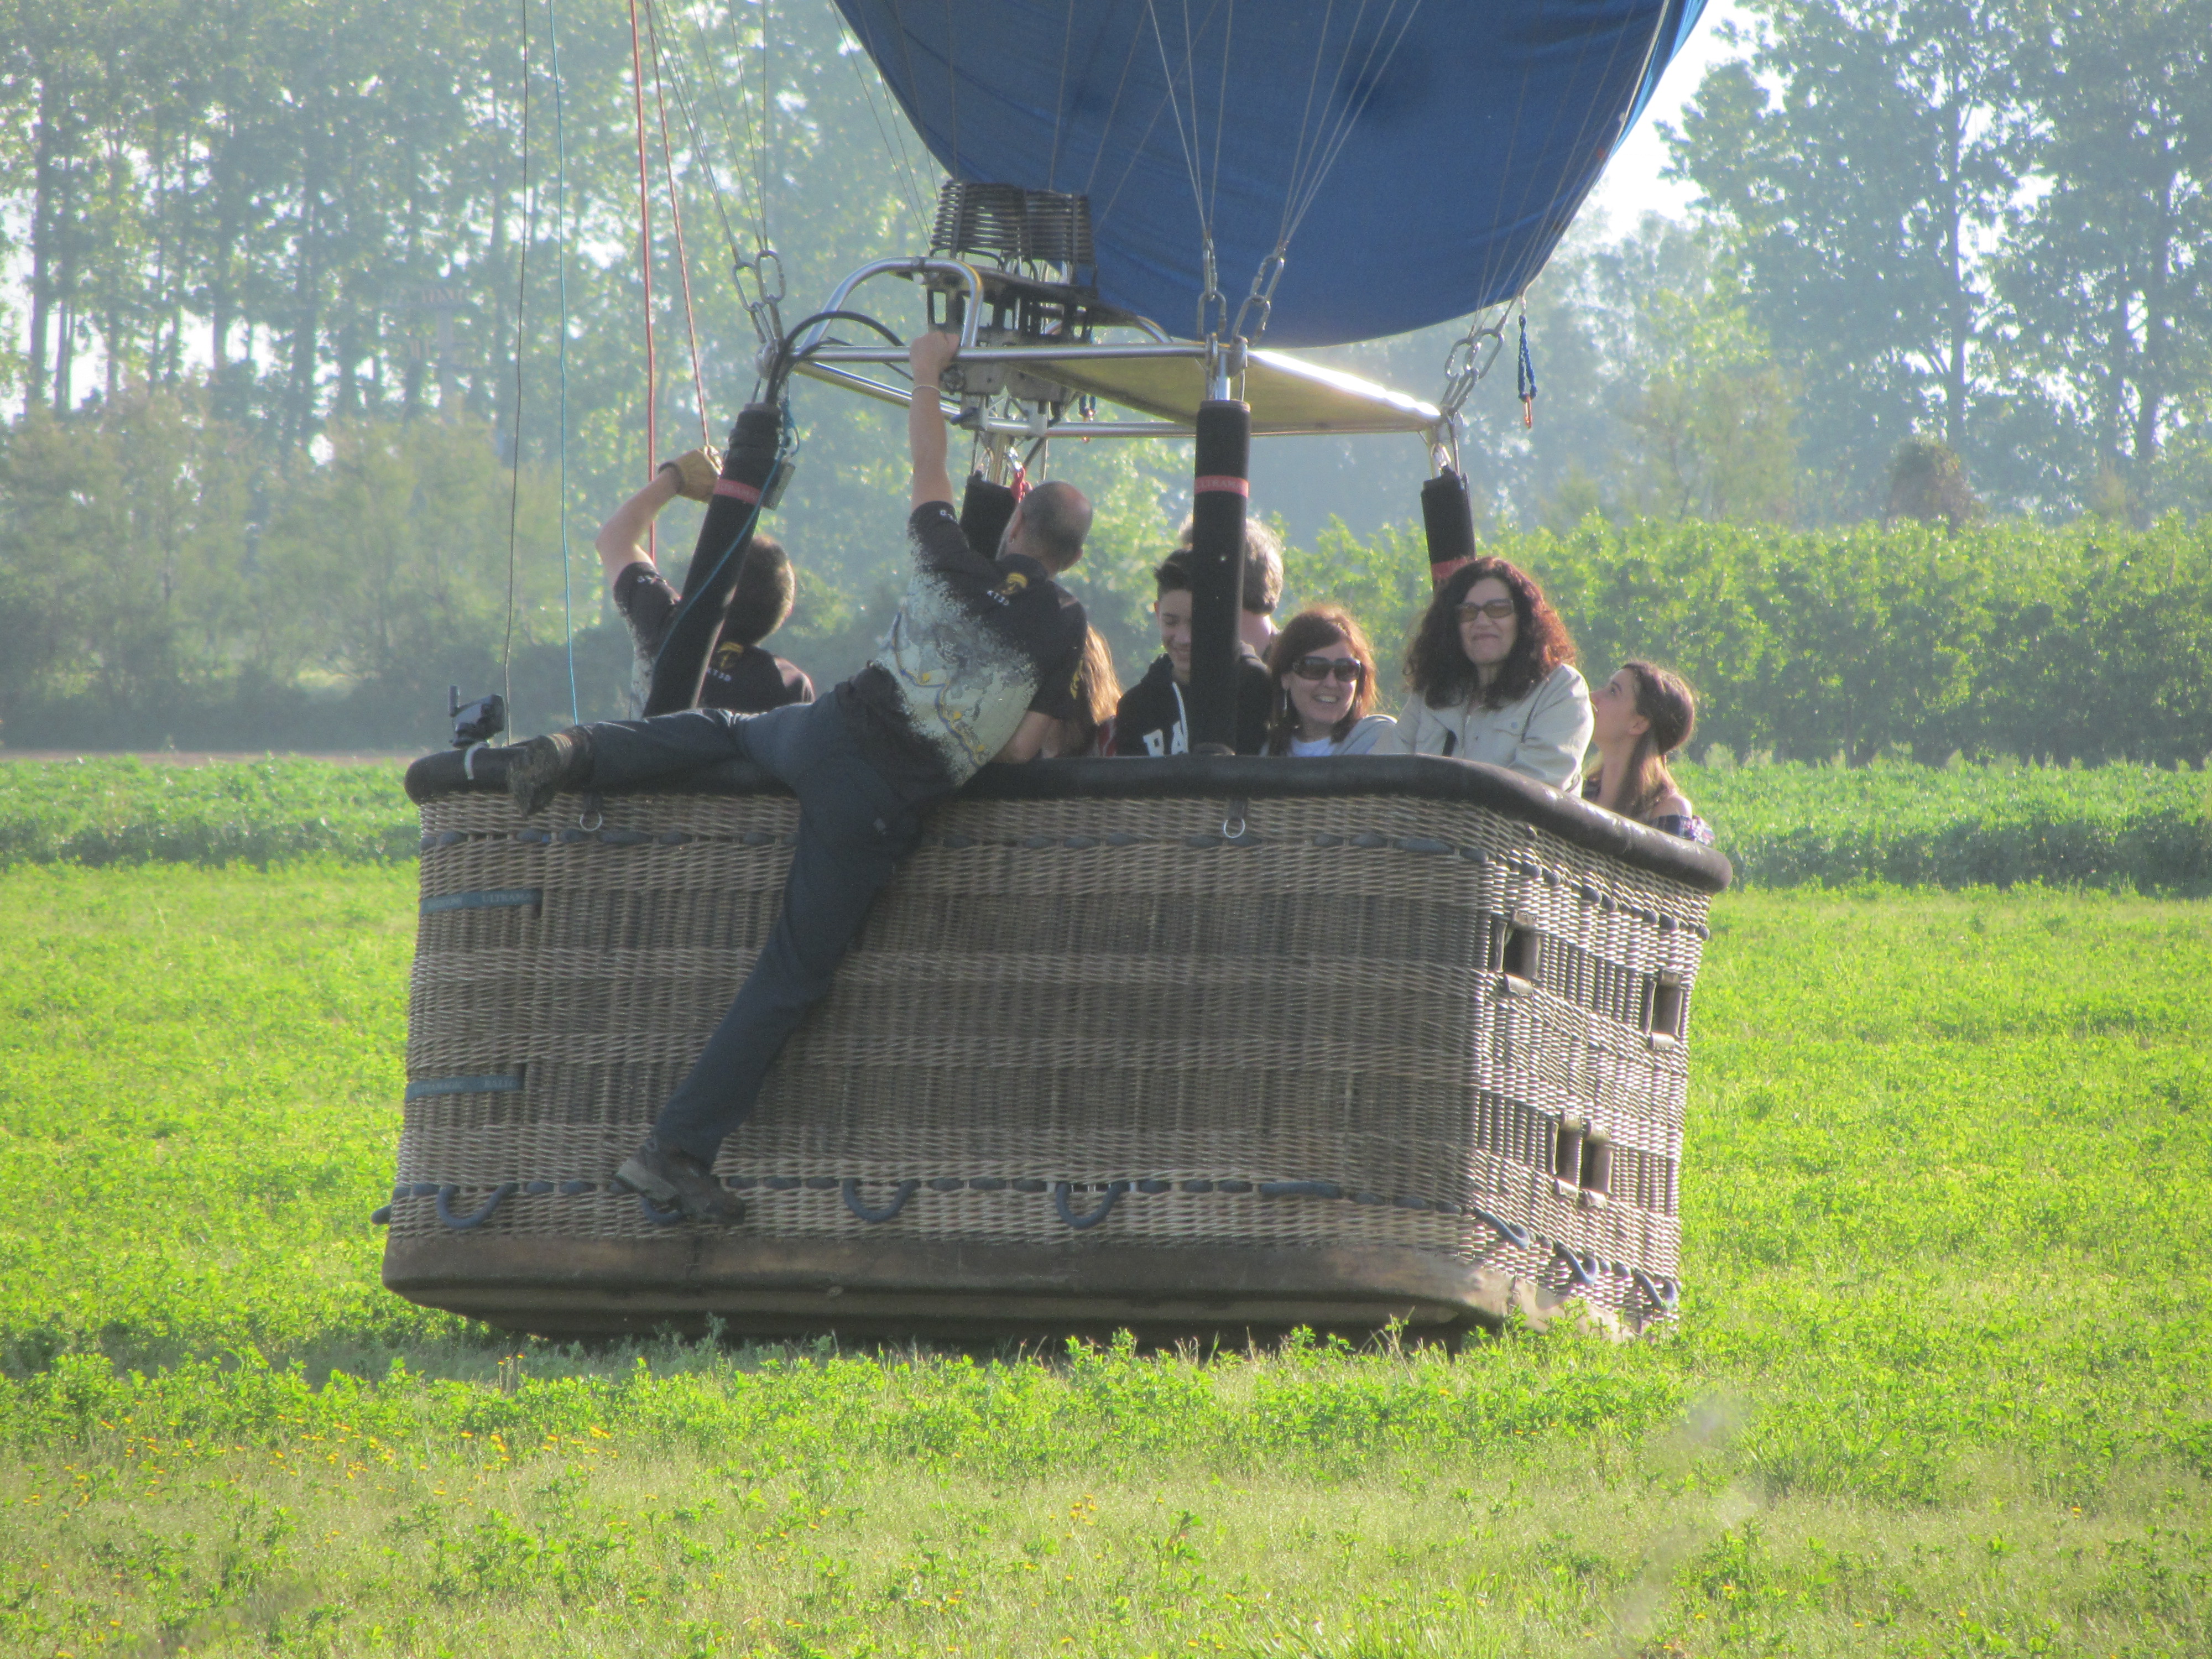 Hot air balloon basket landing in a field